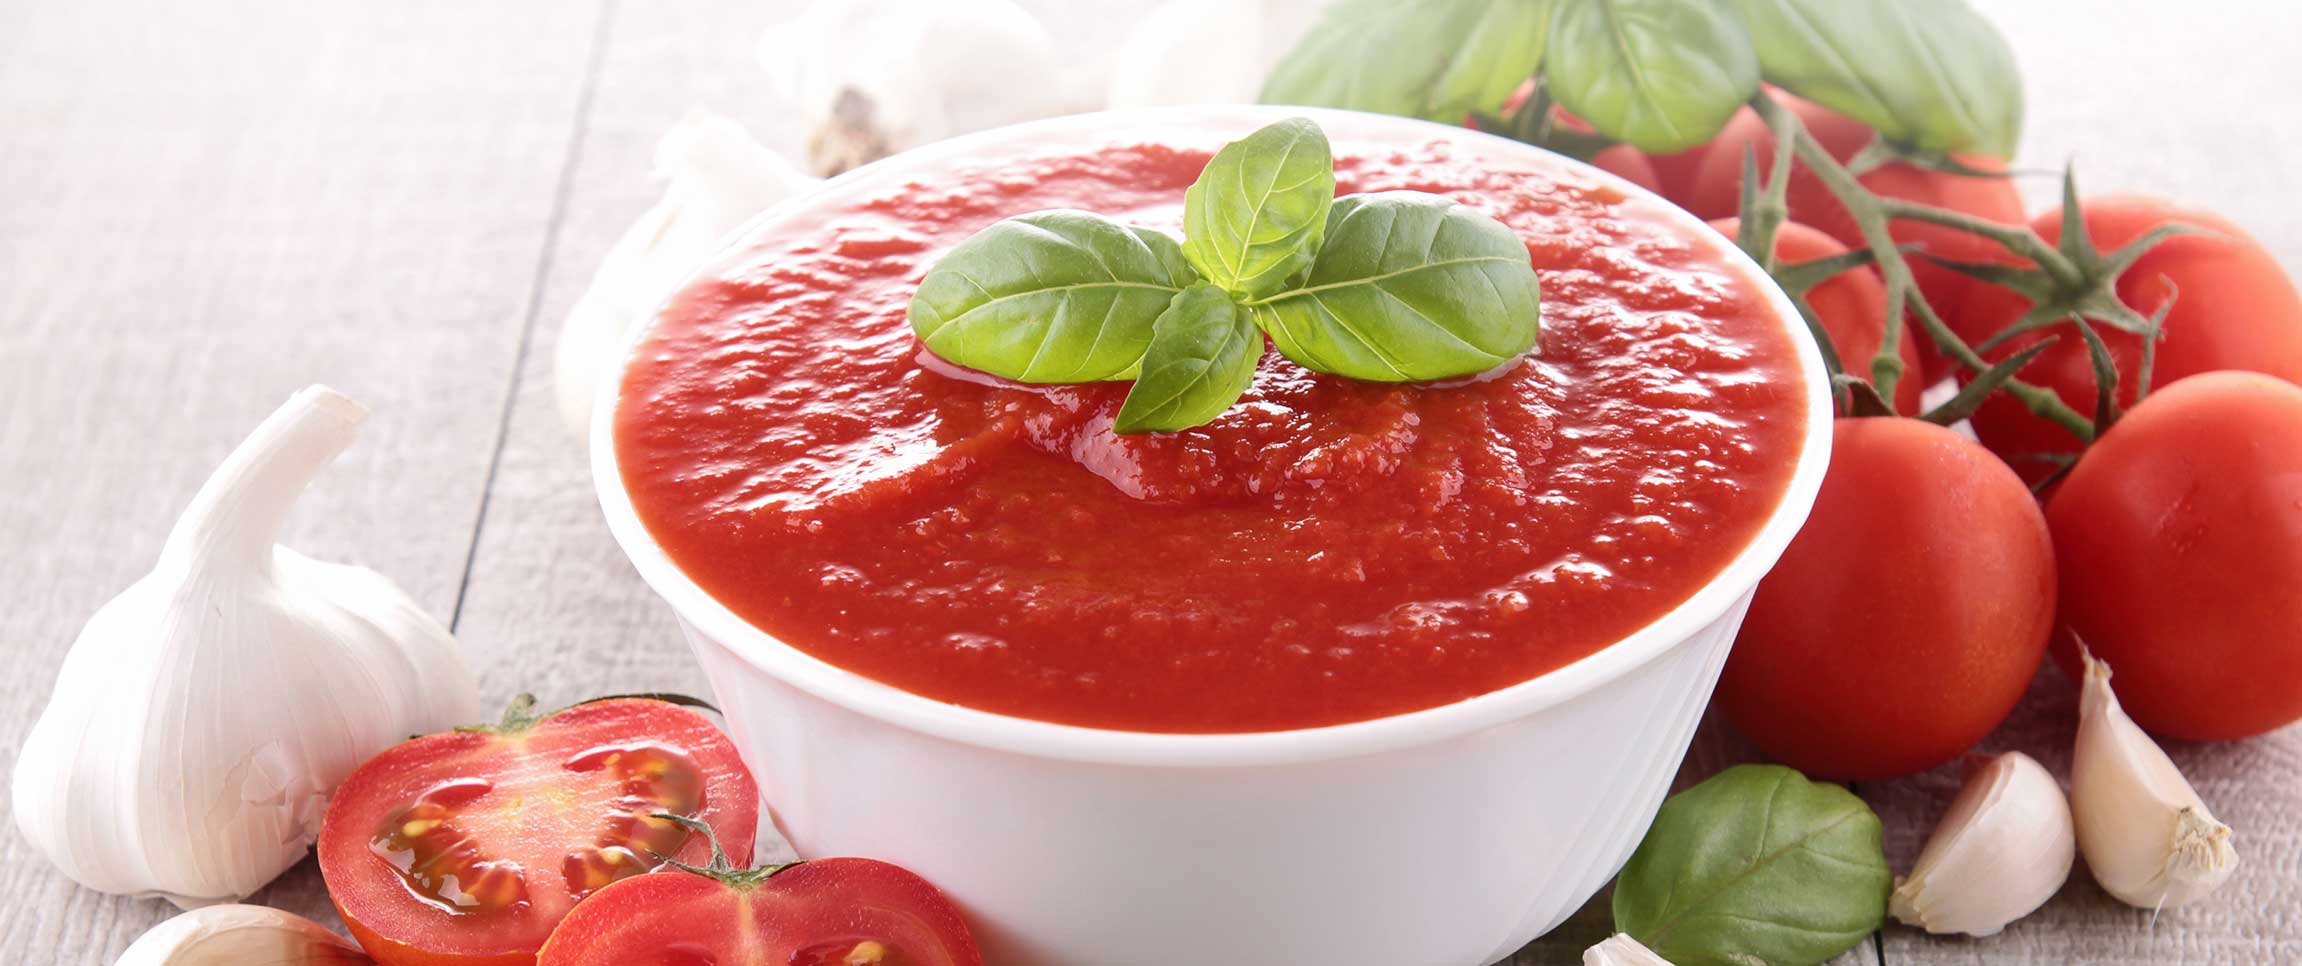 Roasted Tomato Basil Aioli